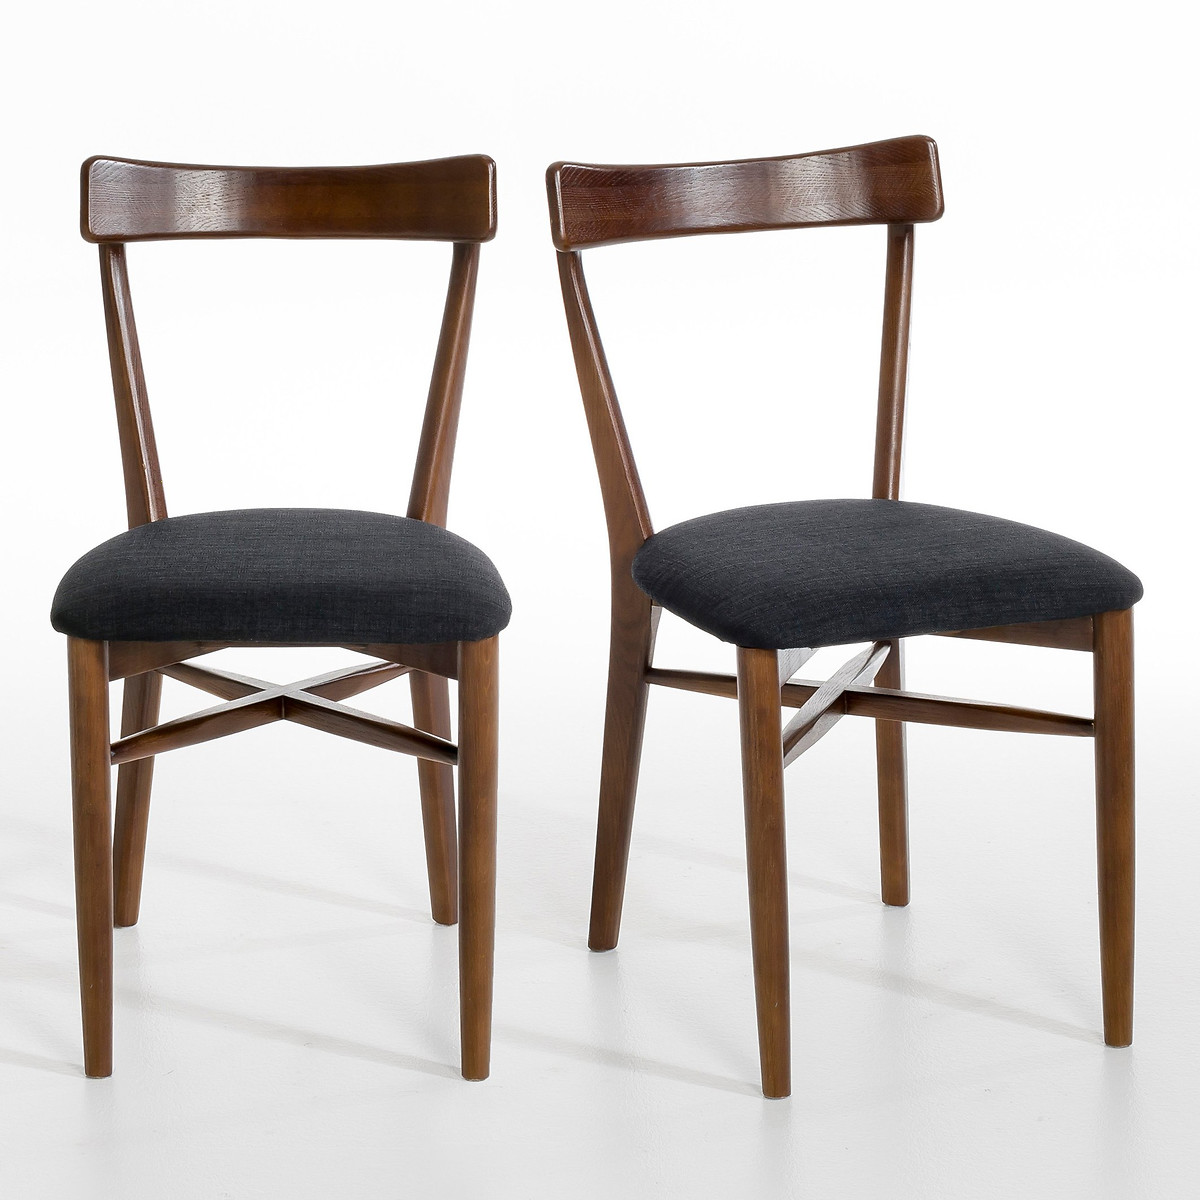 Комплект из 2 стульев, Bree La Redoute единый размер бежевый комплект из 2 стульев складных из бука panni единый размер бежевый